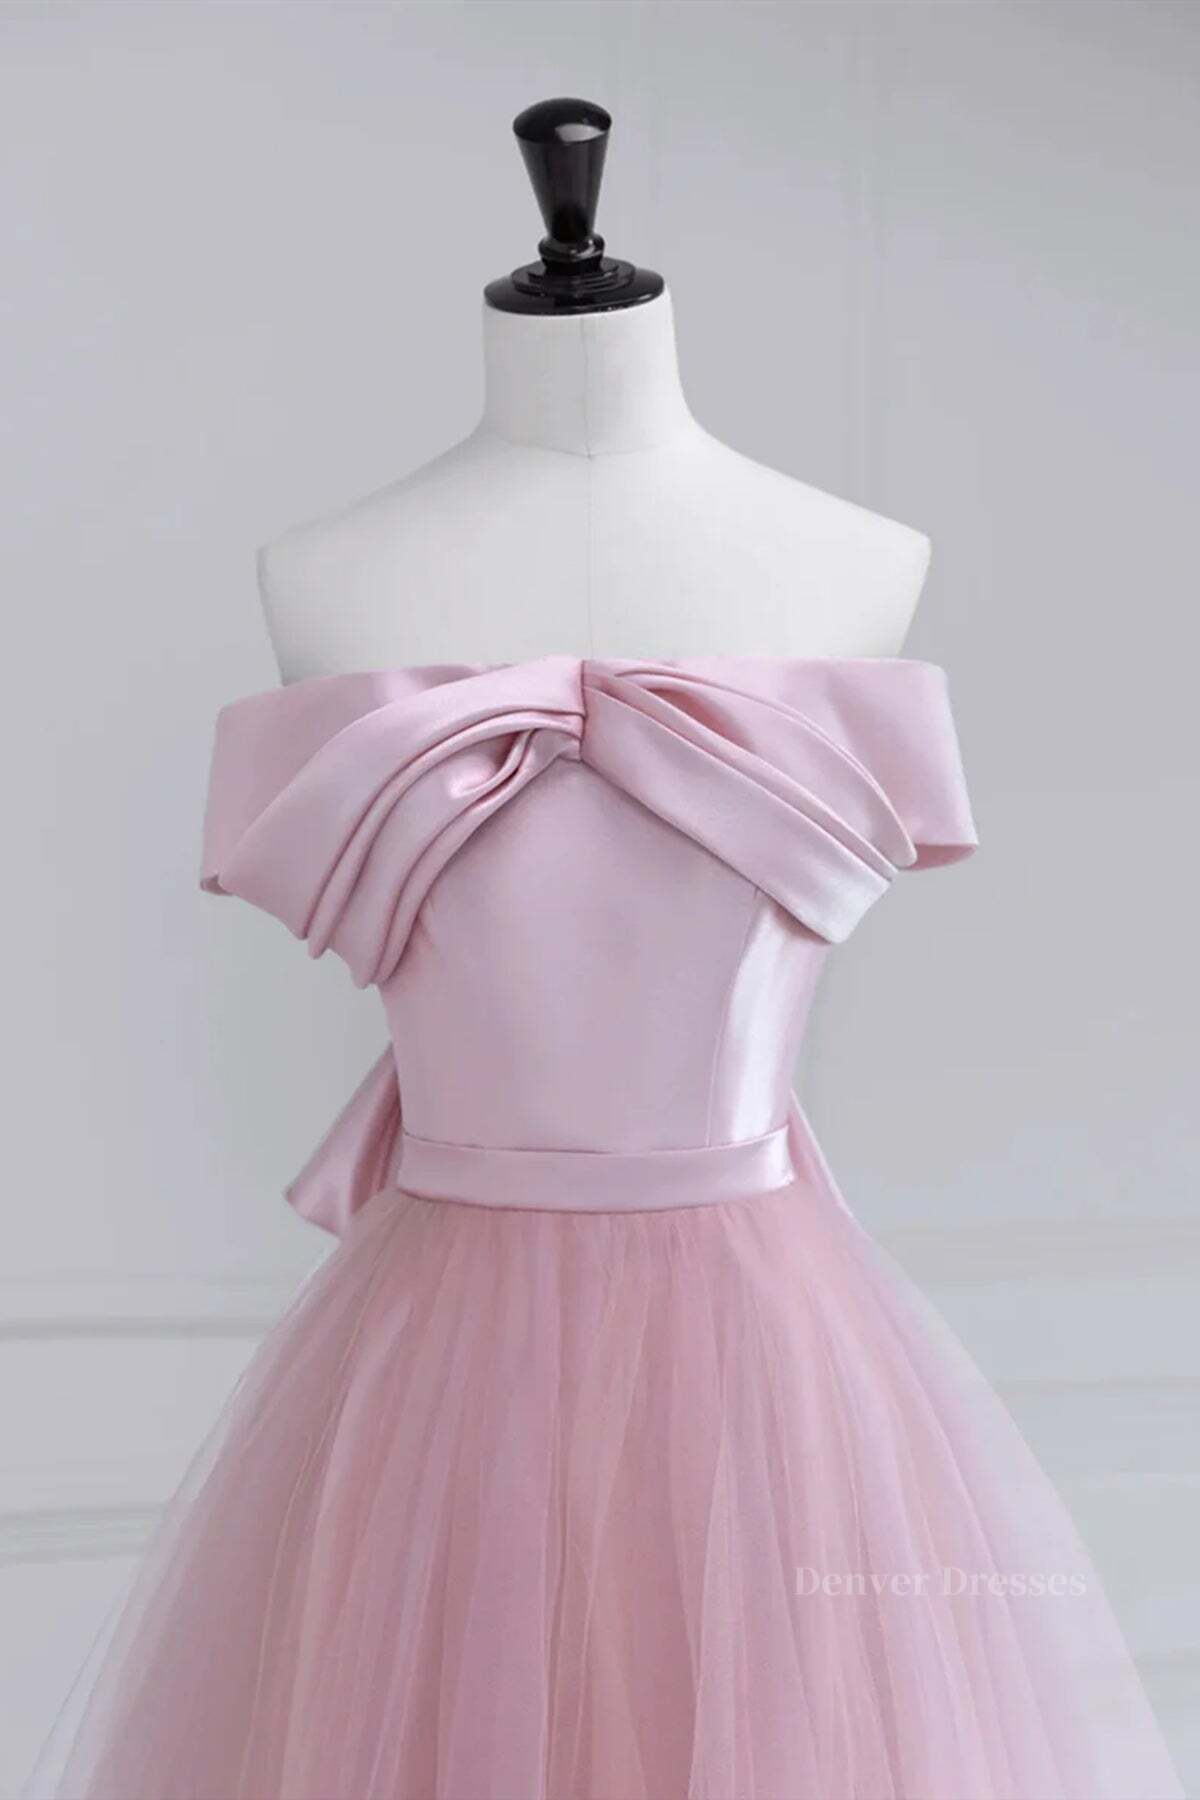 Formal Dresses For Weddings, Off the Shoulder Pink Prom Dresses, Pink Tulle Formal Evening Dresses